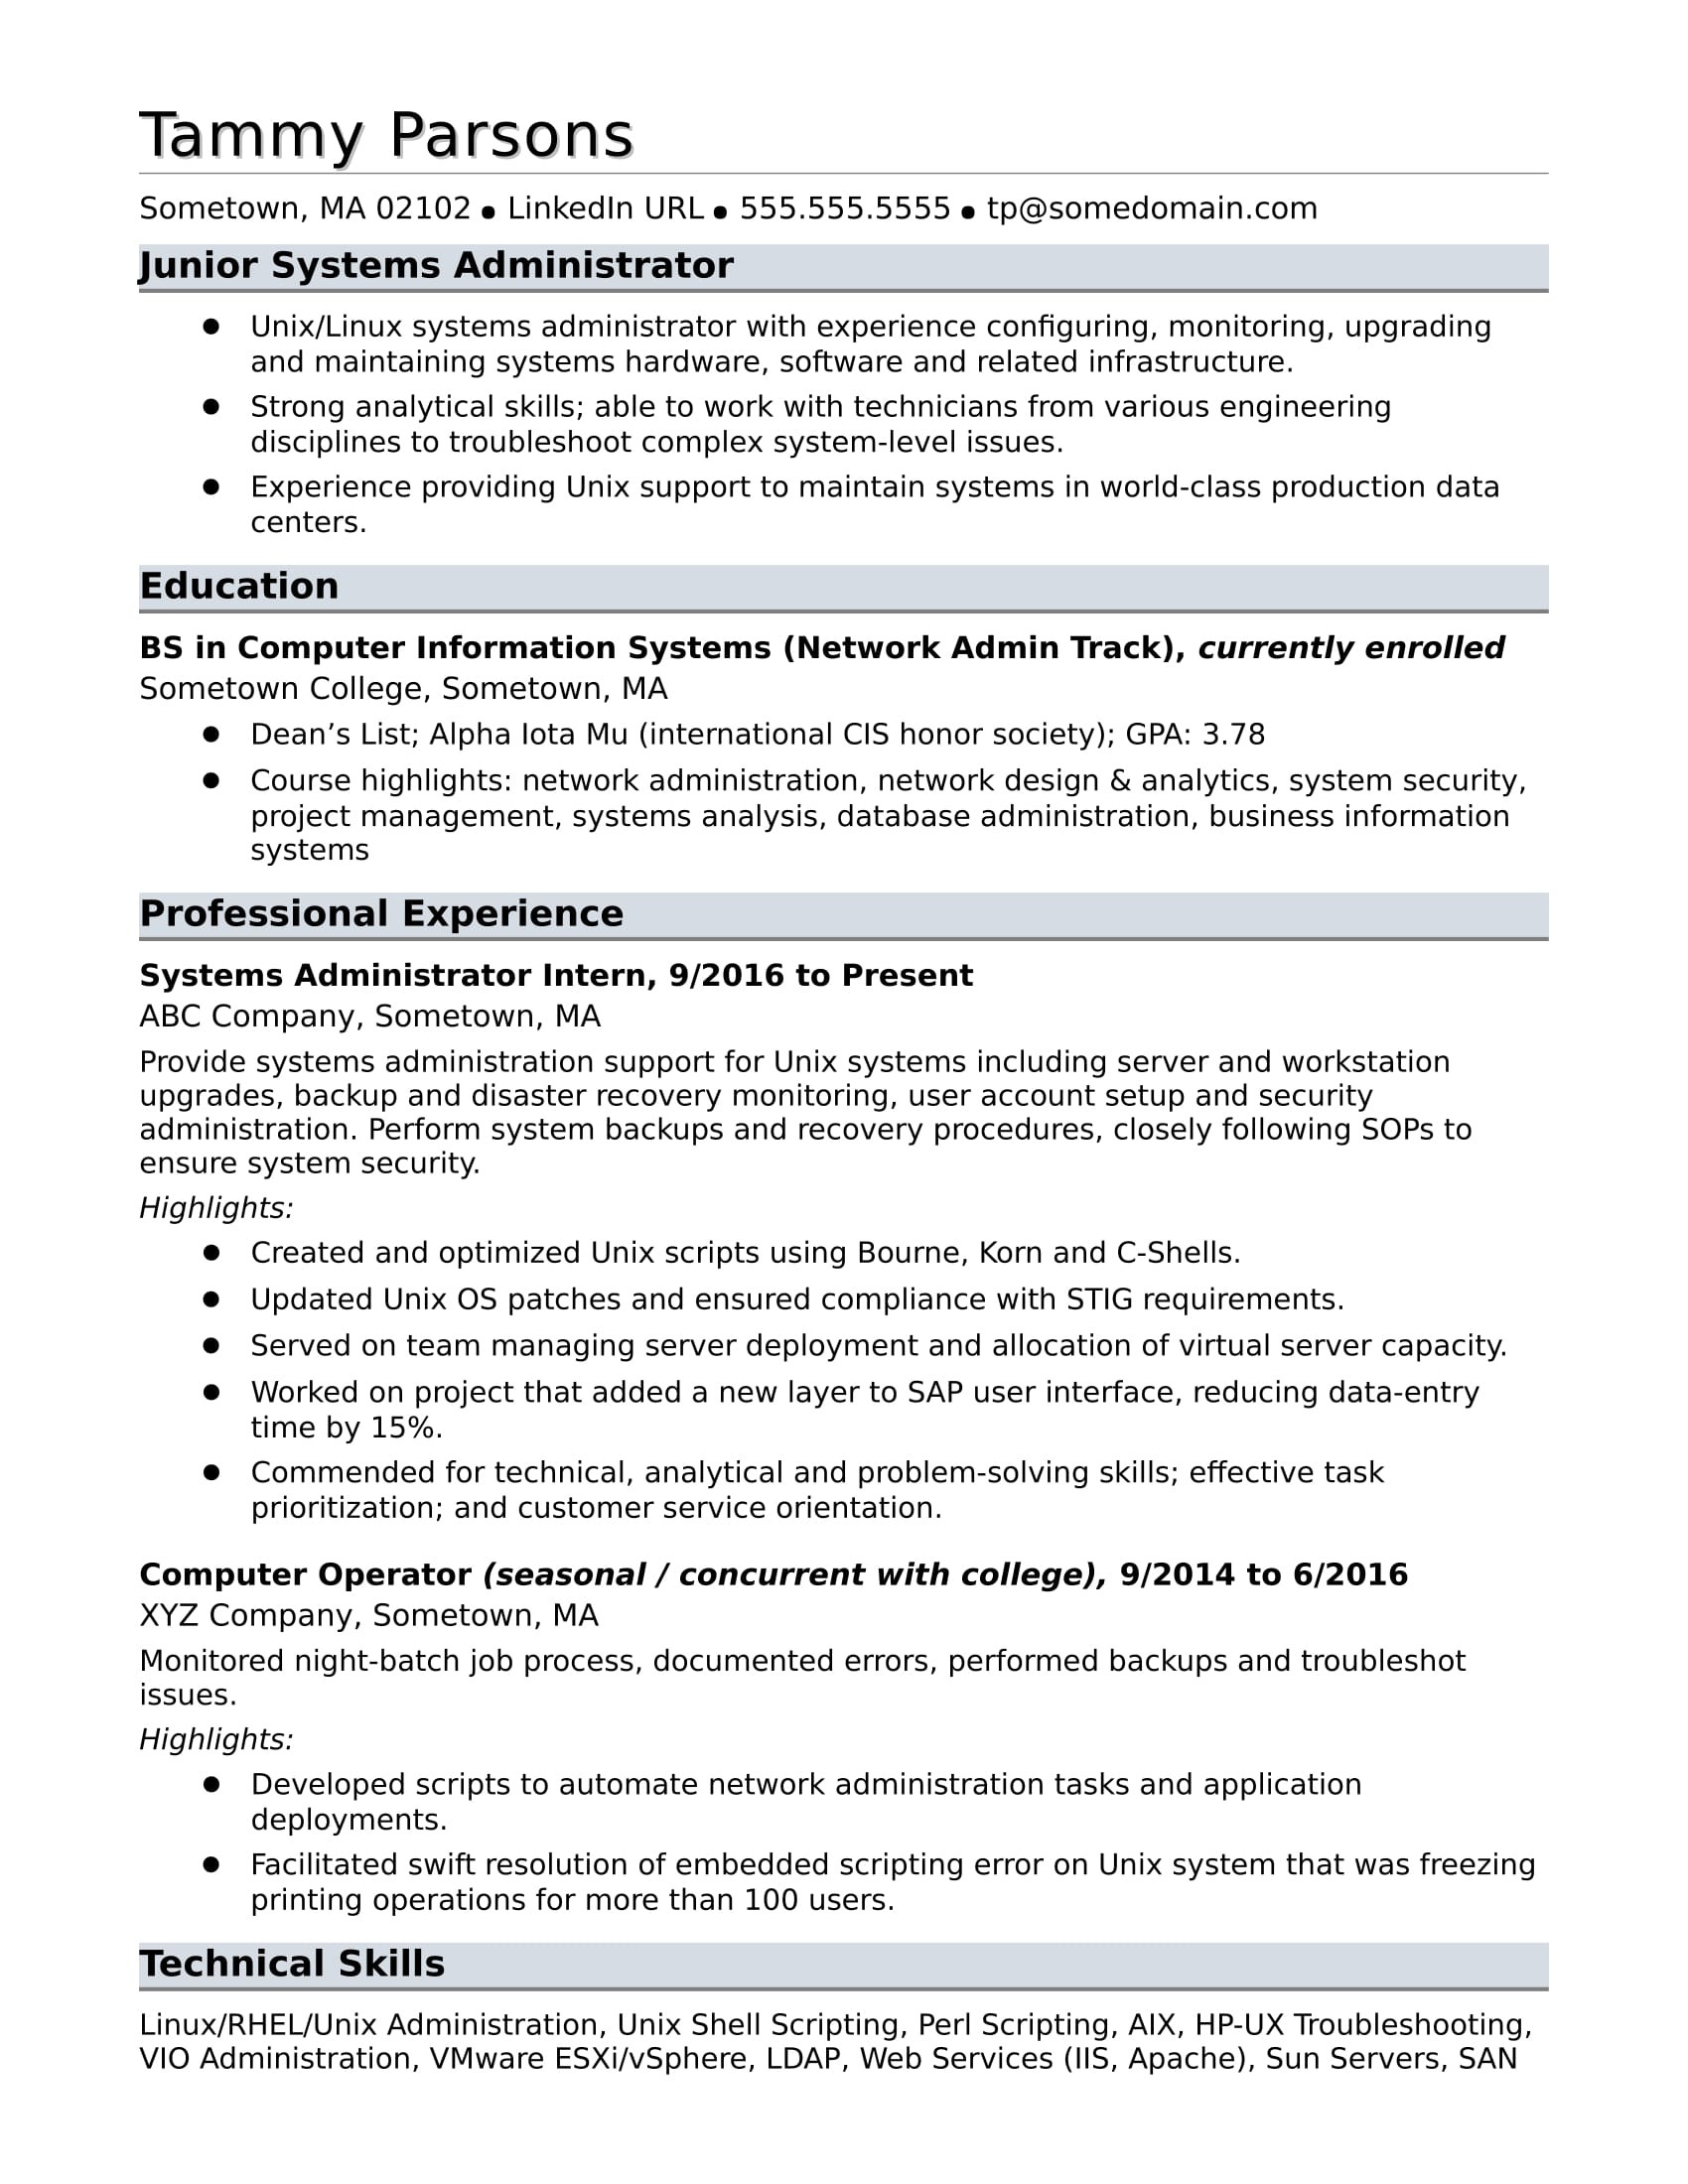 Sample Resume for School Administrator Position Sample Resume for An Entry-level Systems Administrator Monster.com